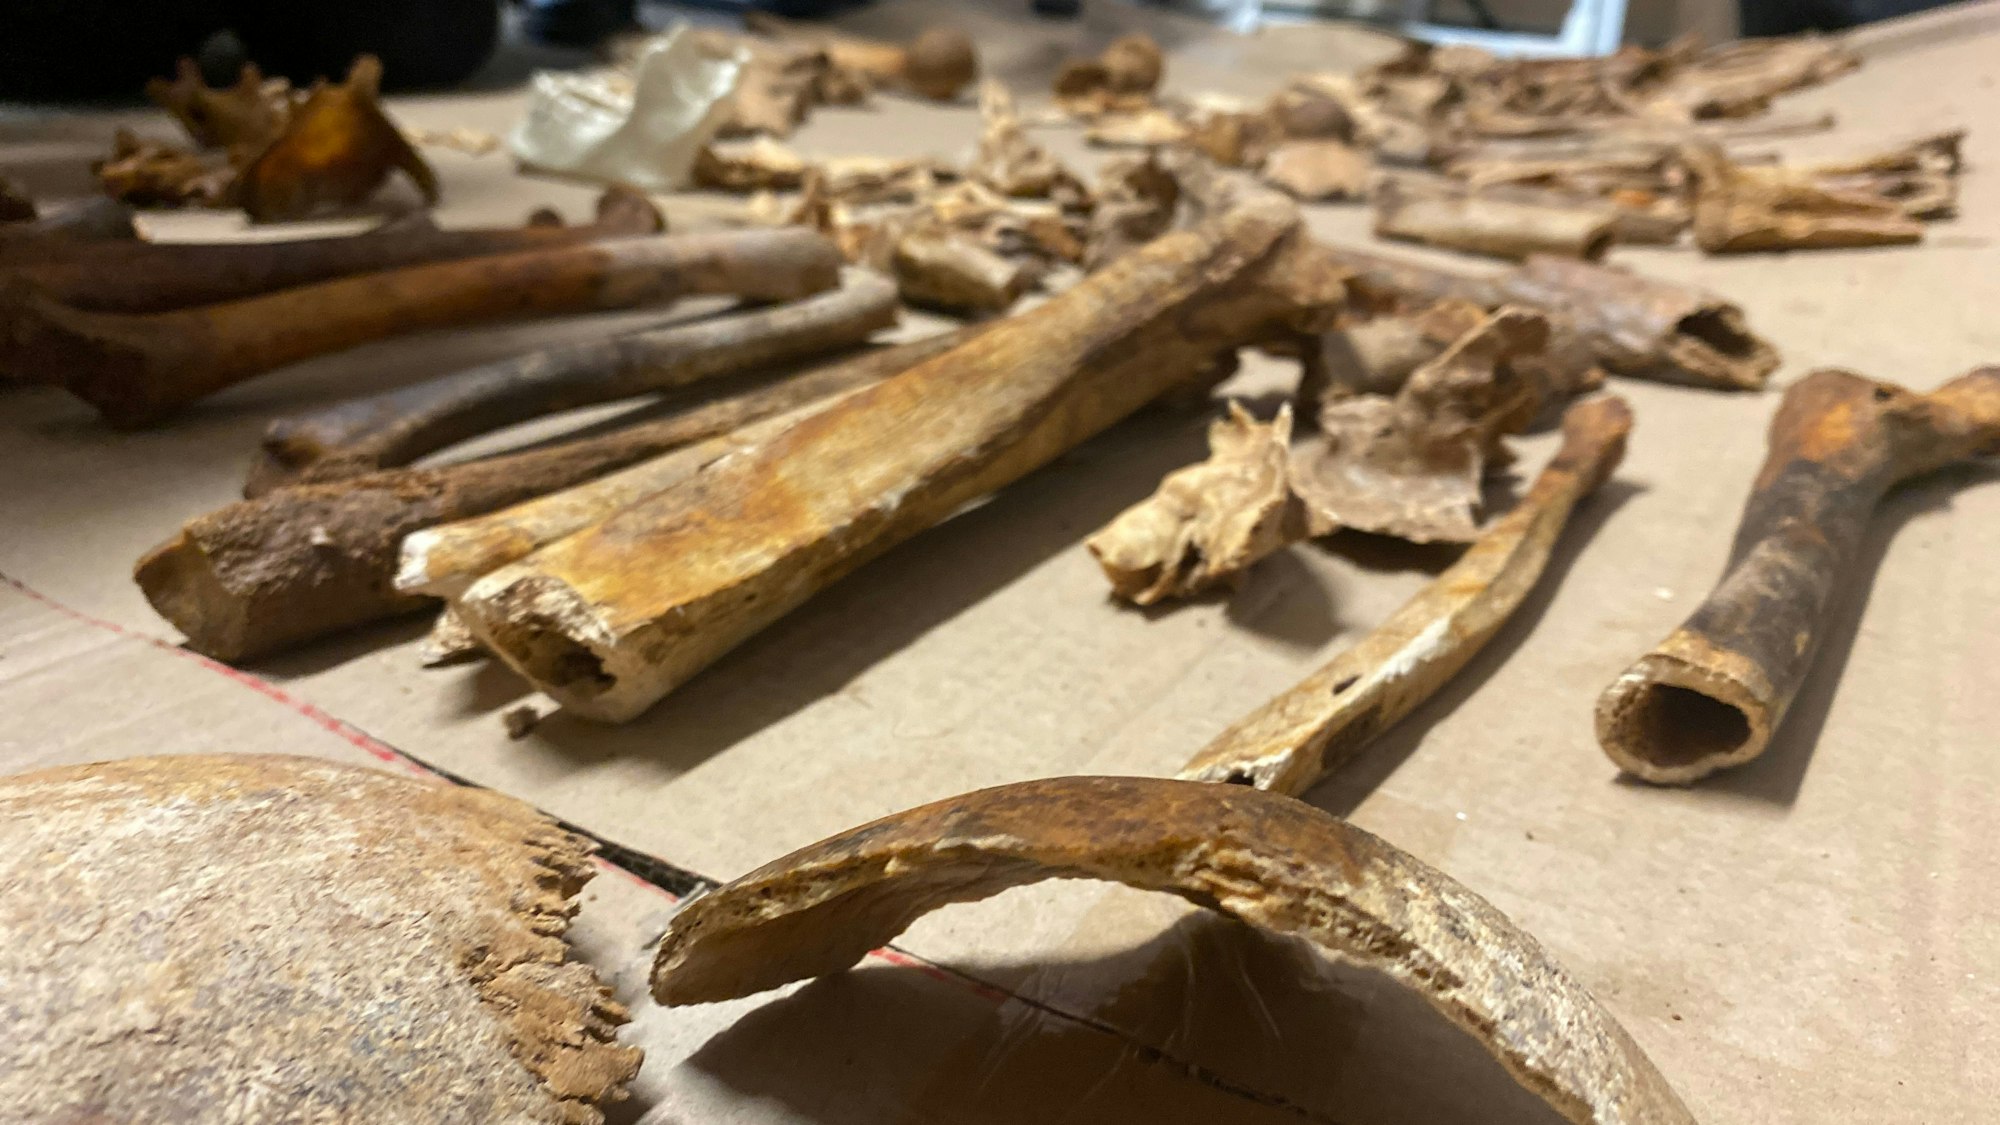 Mehr als 100 Jahre alte, menschliche Knochen sind auf einem Tisch ausgebreitet. Sie waren bei Bauarbeiten in Niederelvenich gefunden worden.